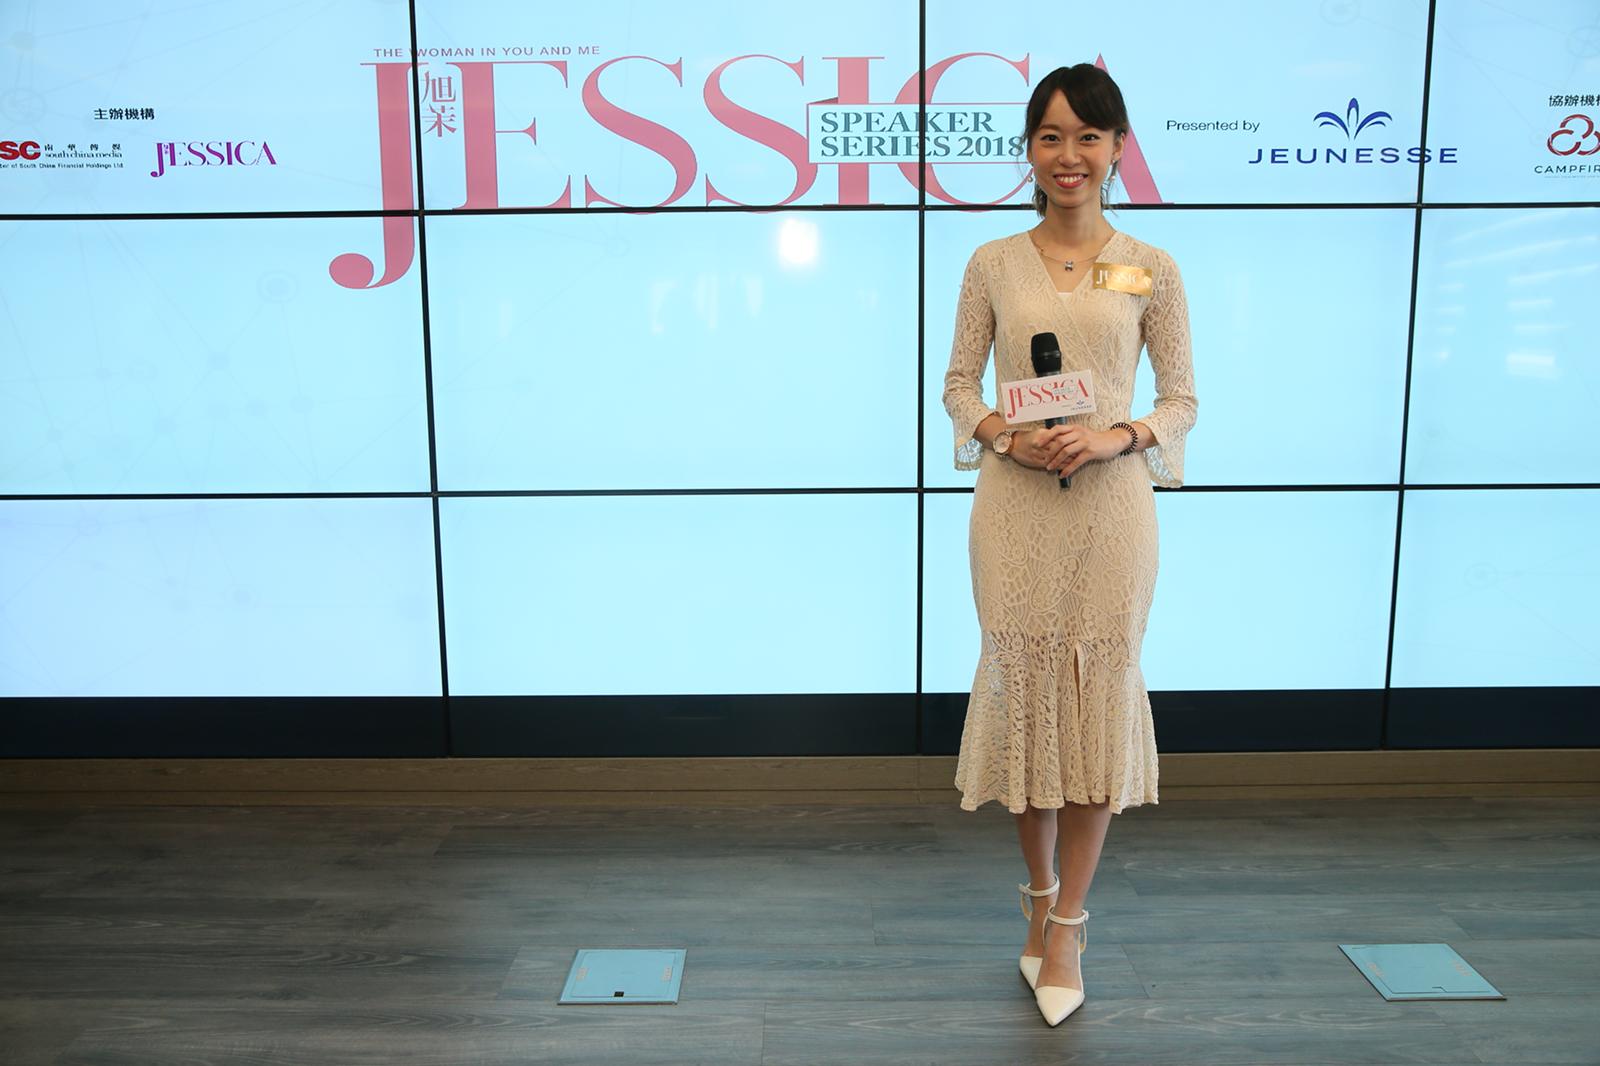 VIVIAN 曾子晴司儀工作紀錄: 全港最受歡迎女性時尚雜誌Jessica Speaker Series Talk 2018 活動司儀